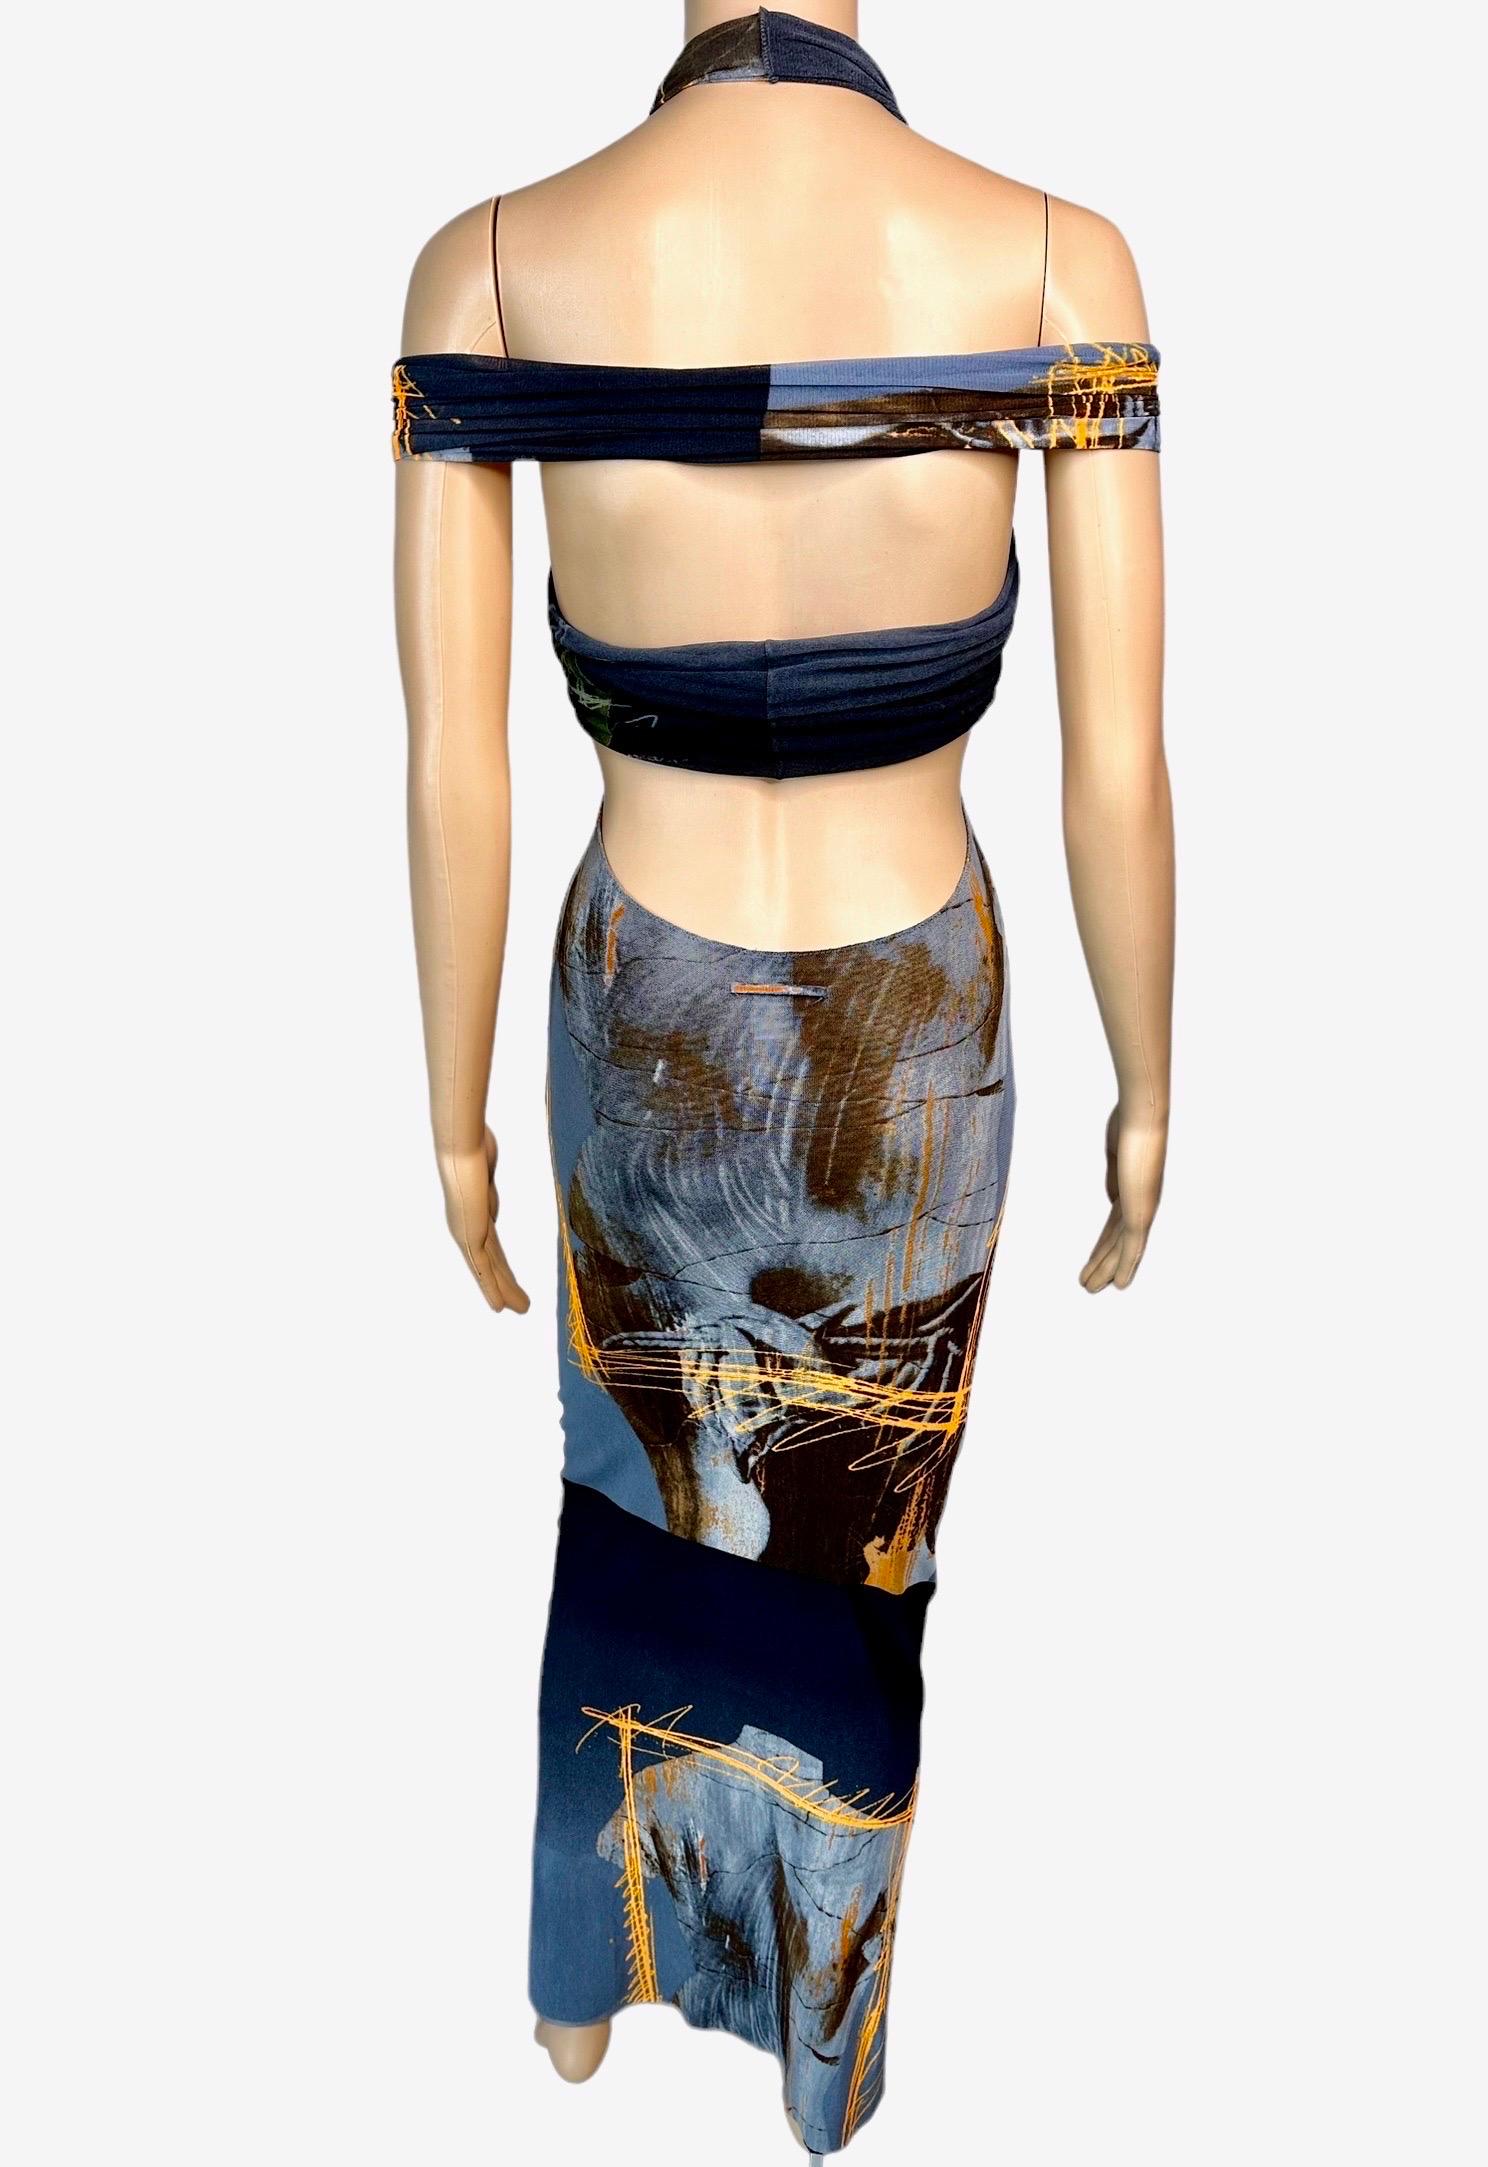 Jean Paul Gaultier Soleil S/S 1999 Vintage Venus De Milo Cutout Mesh Sheer Dress 4